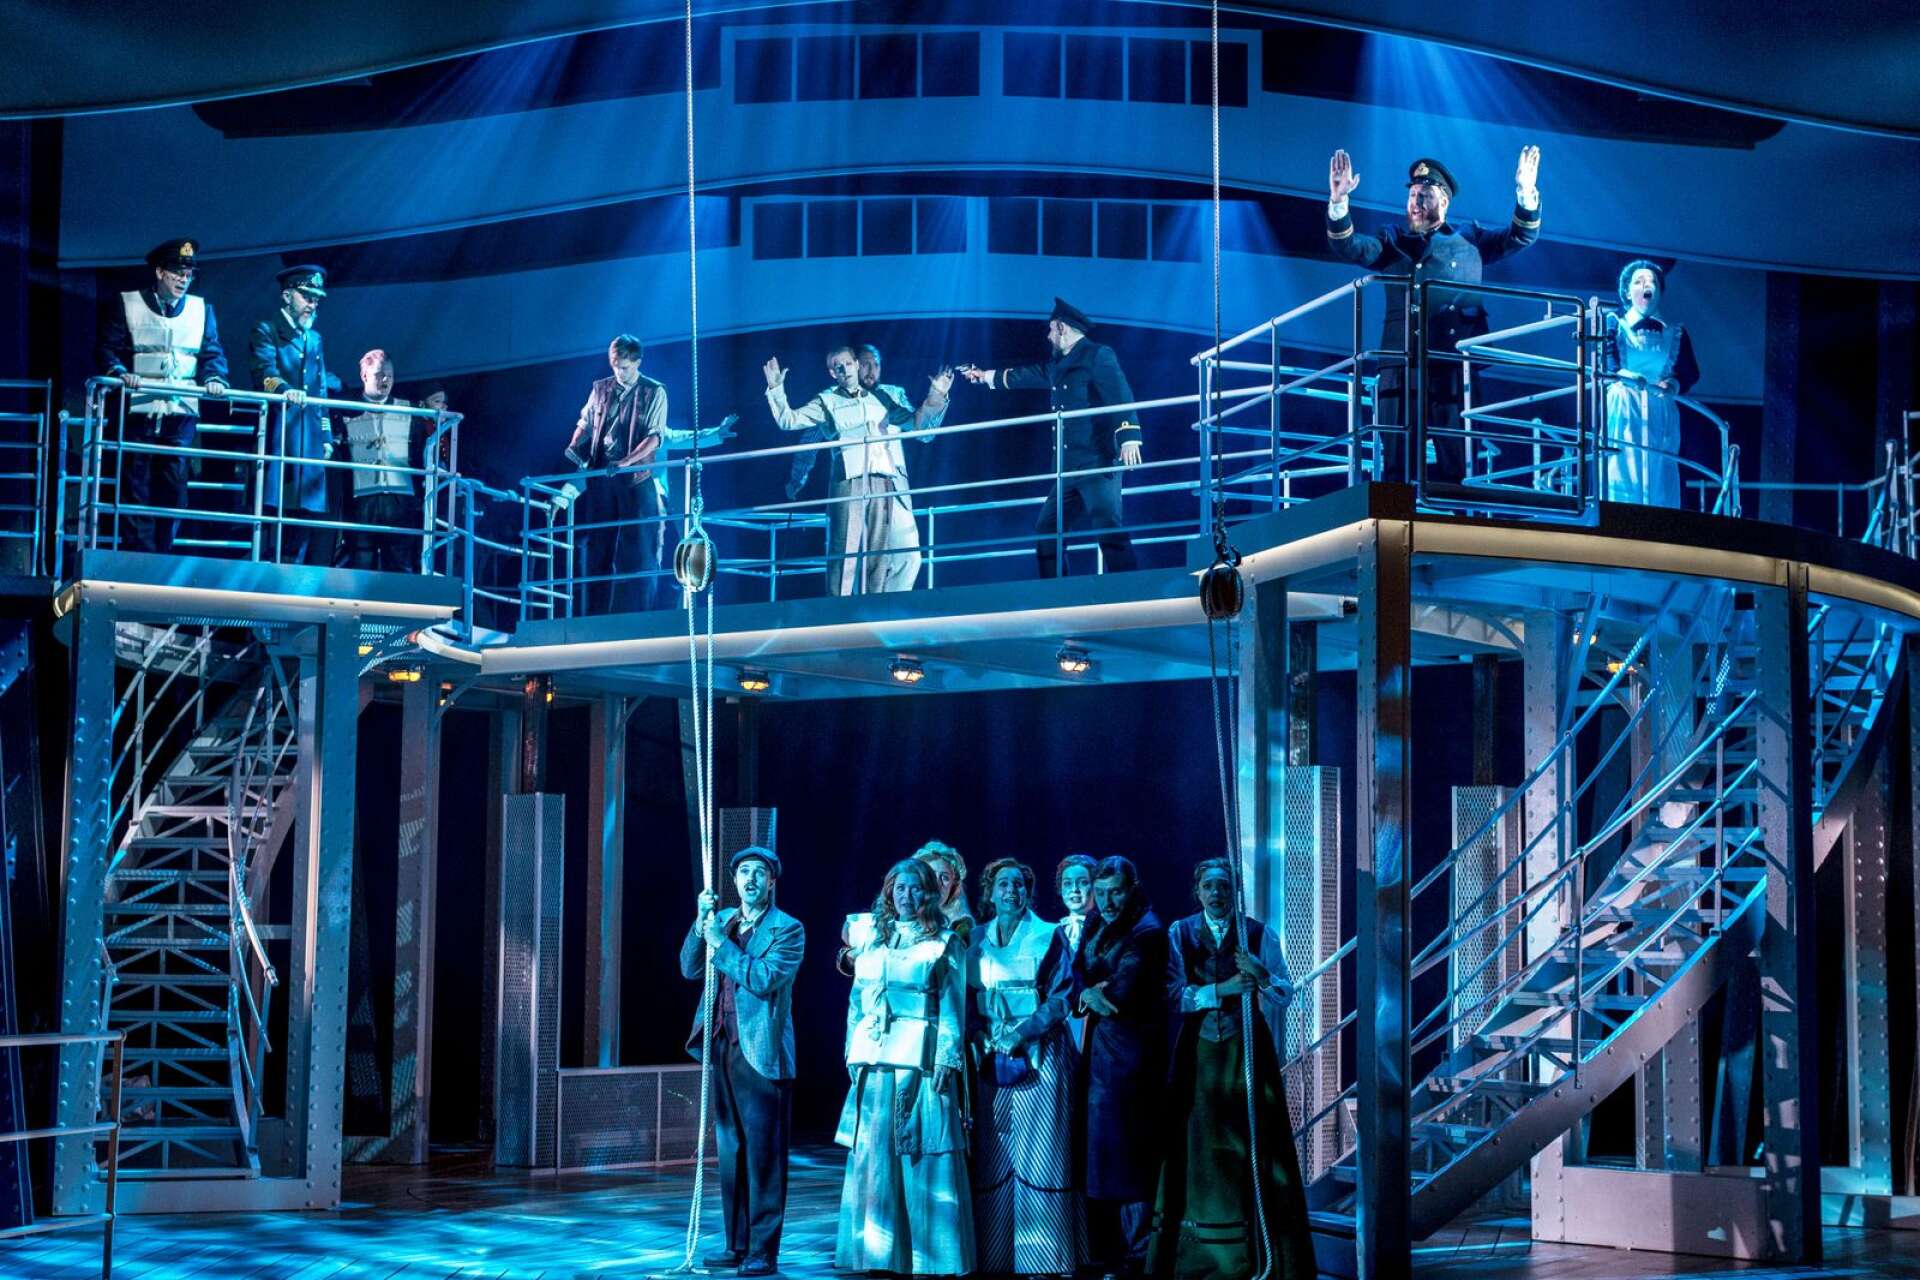 Musikalen Titanic är en publiksuccé på Wermland opera. ”Det är lapp på luckan”, säger marknadschefen.